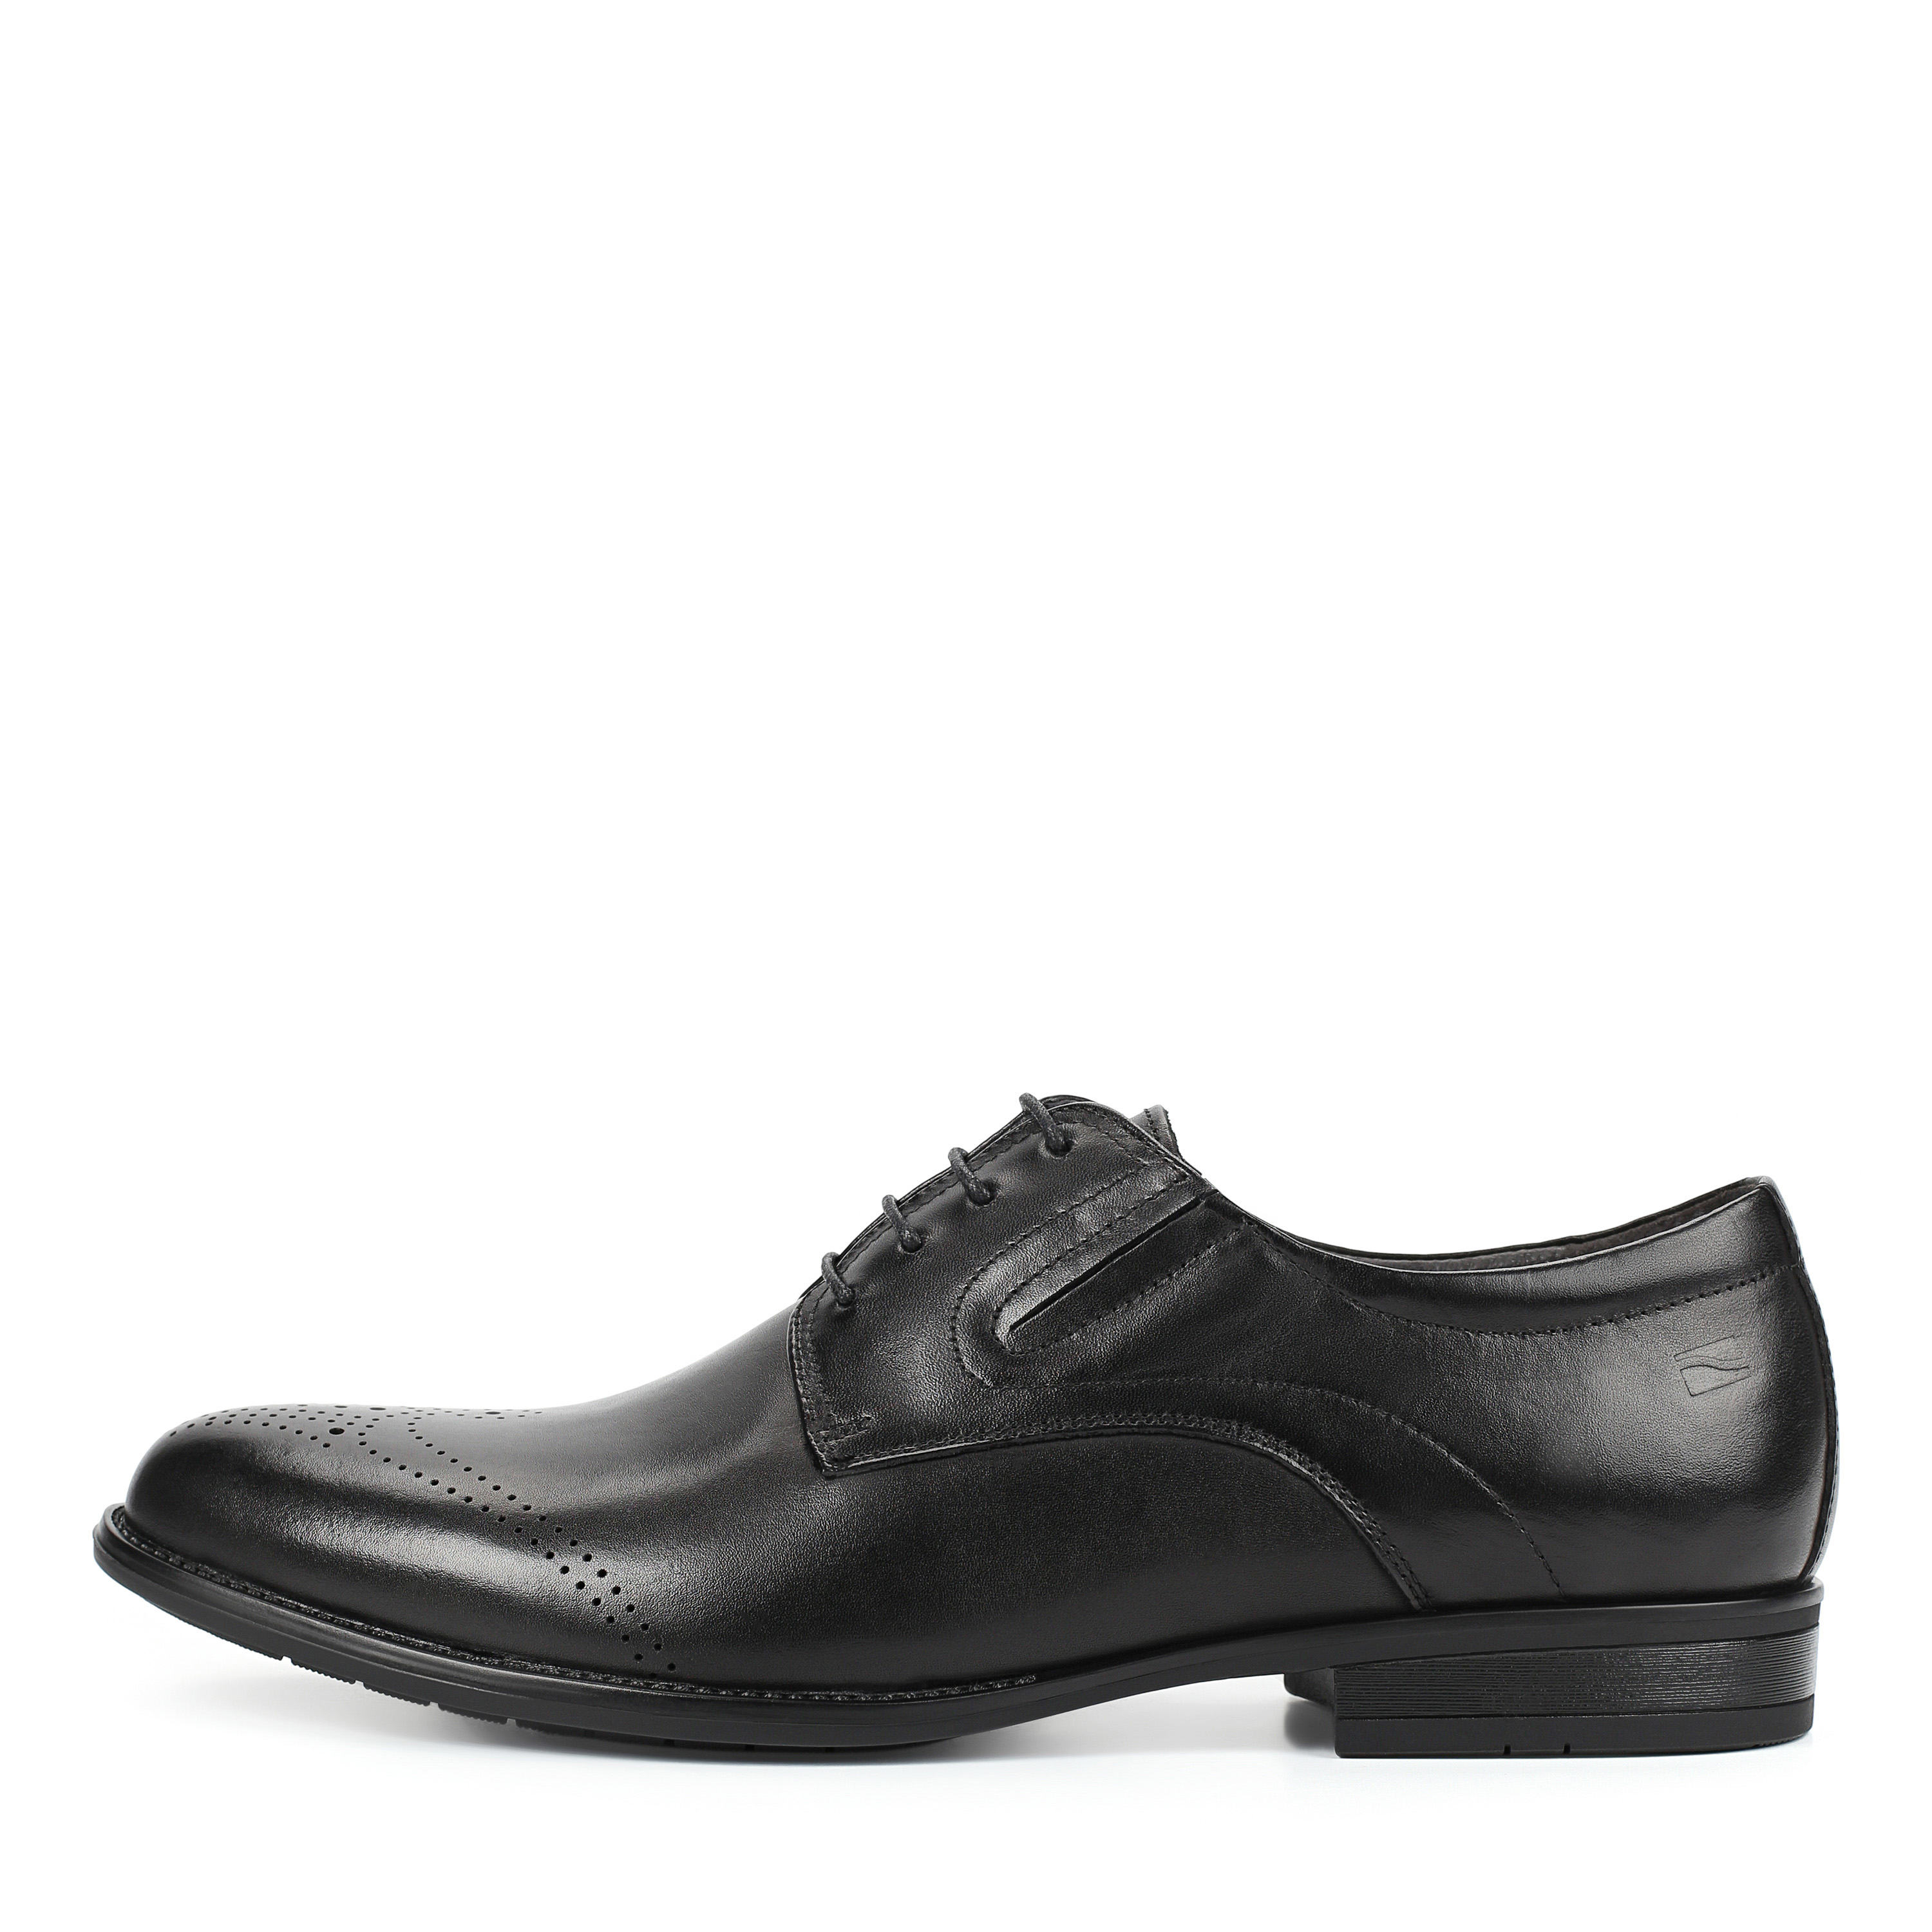 Туфли Thomas Munz 58-073A-1101, цвет черный, размер 40 дерби - фото 1